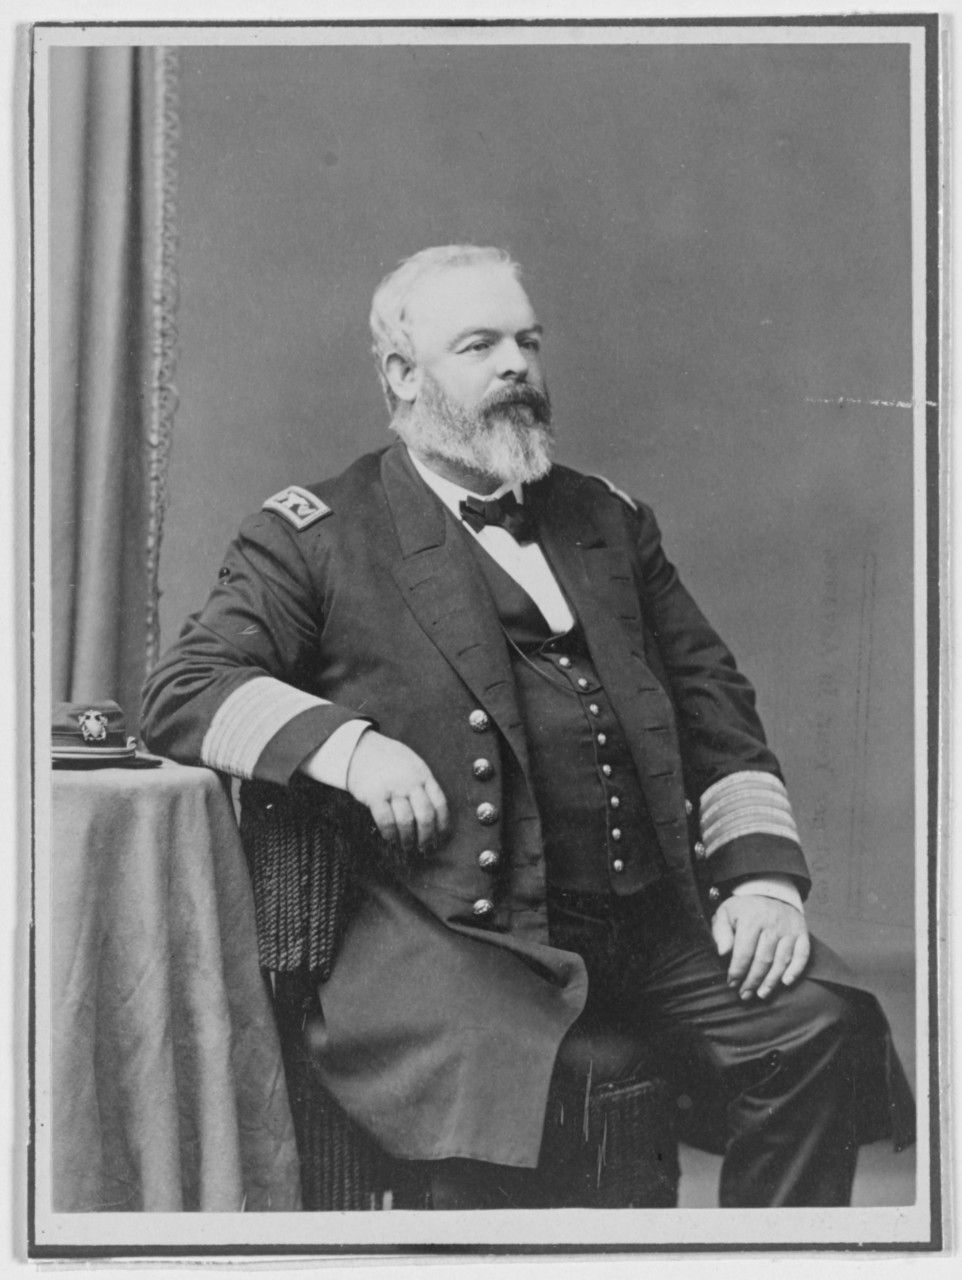 Captain Edward Hartt, USN